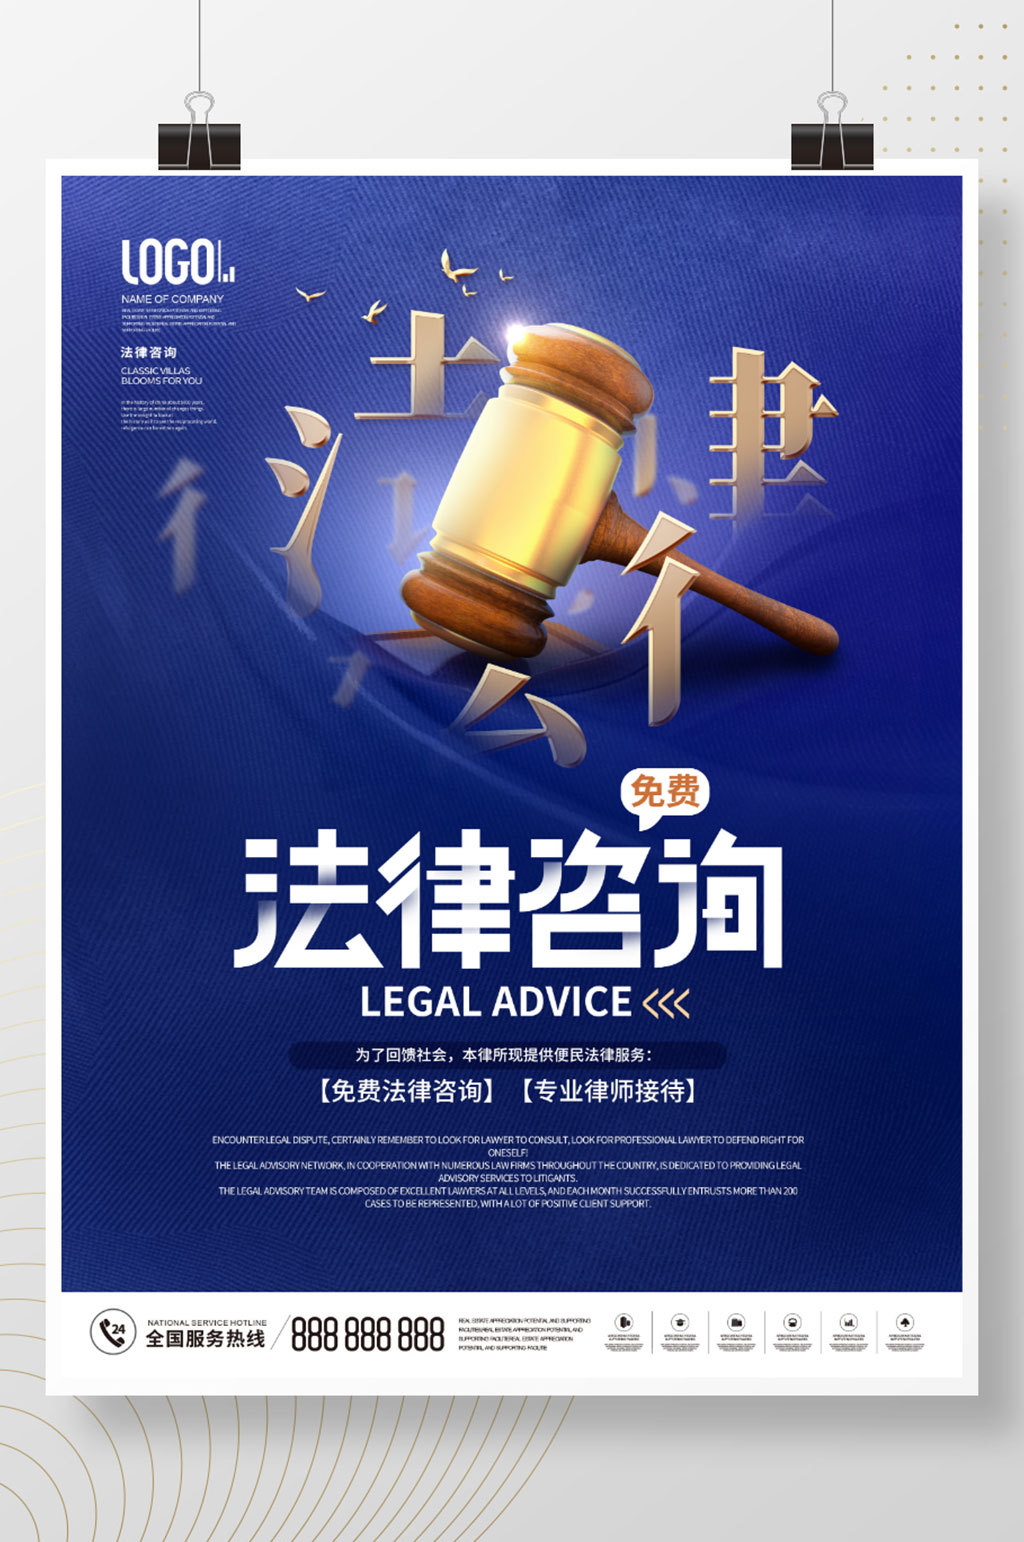 简约律师事务所介绍免费法律咨询宣传海报